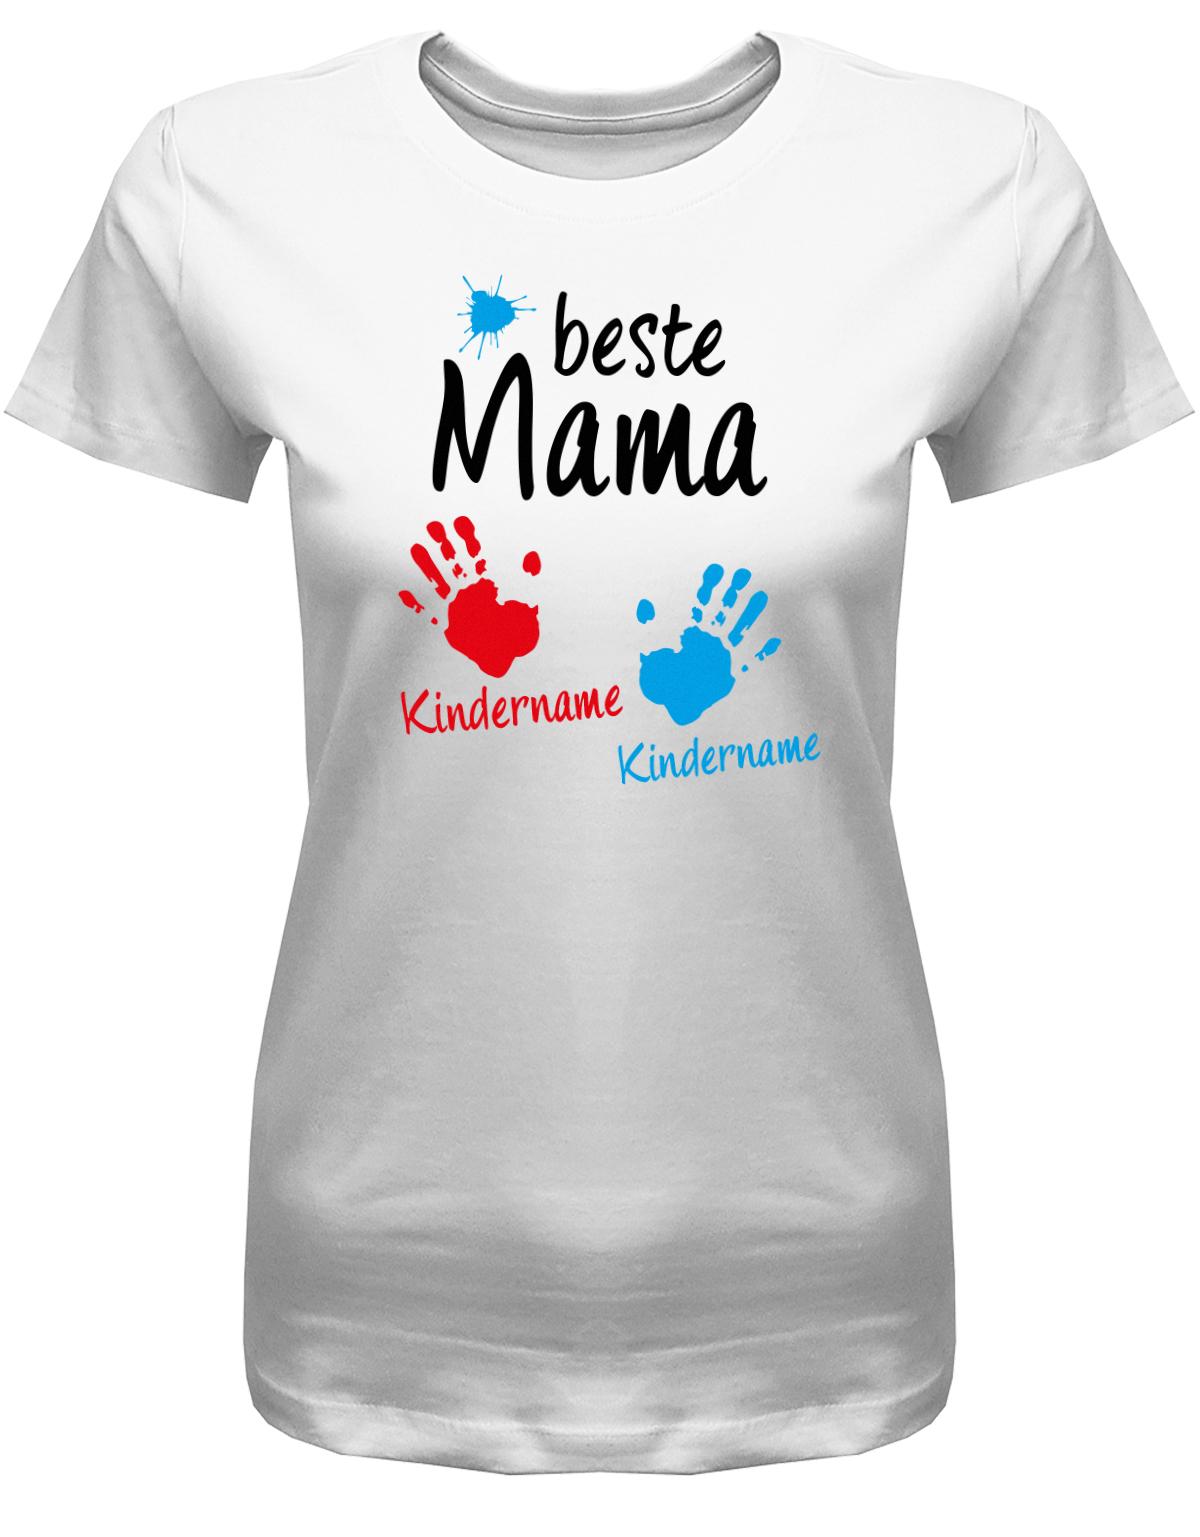 Beste-Mama-2-Kinder-Wusnchnamen-Damen-Shirt-Weiss